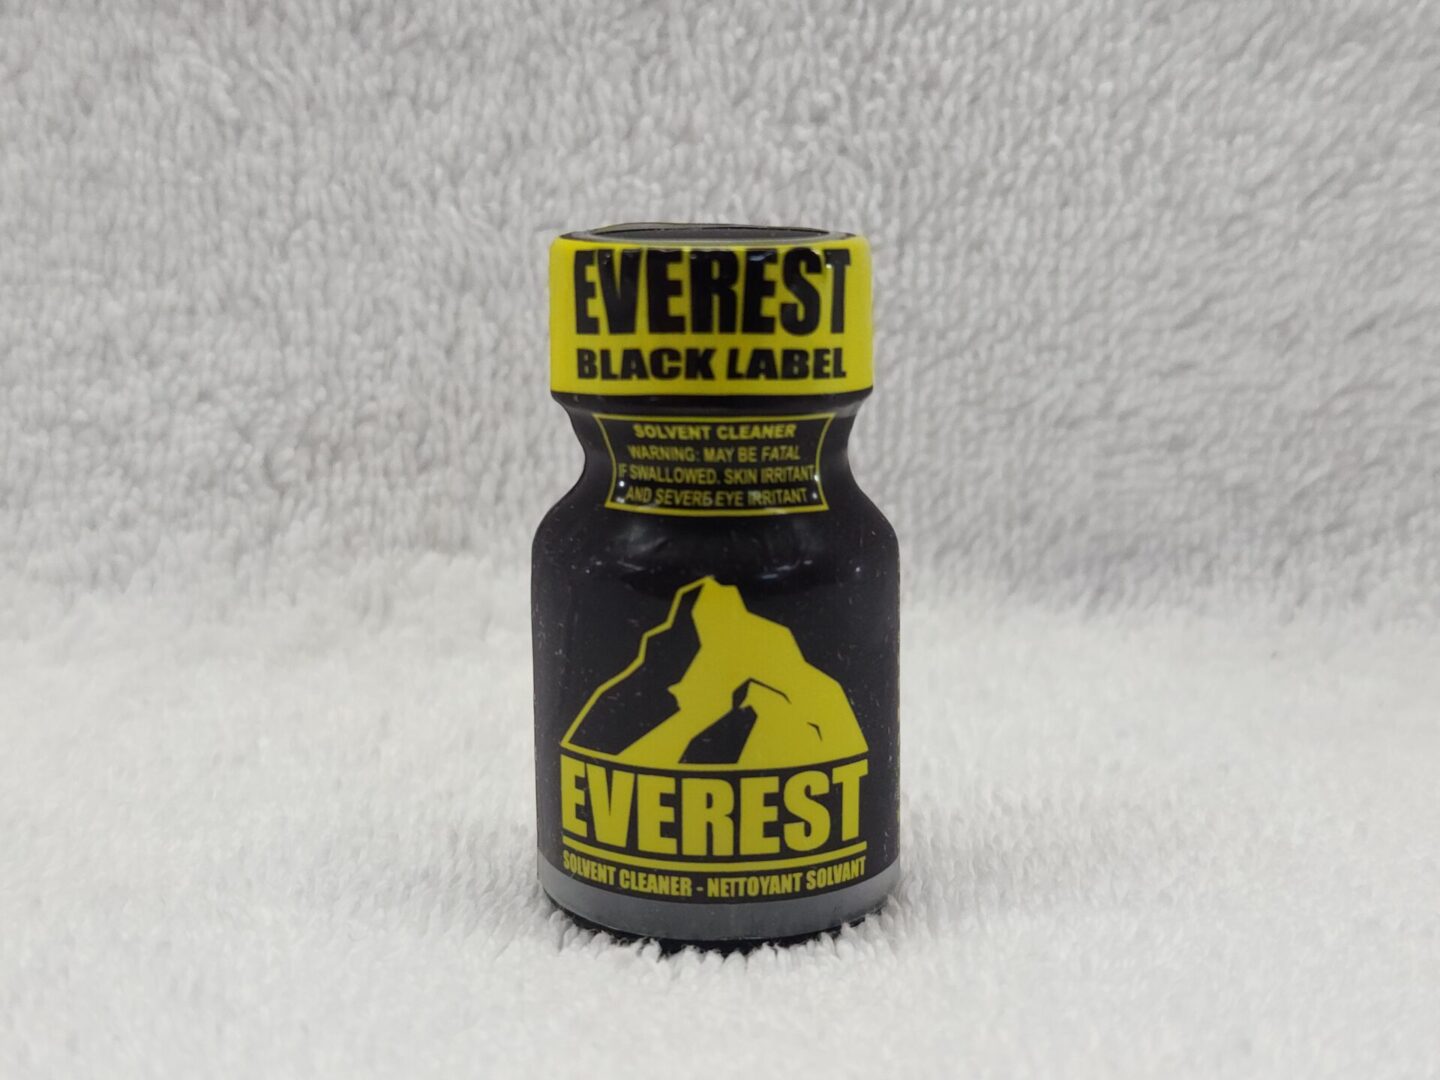 Everest black label.